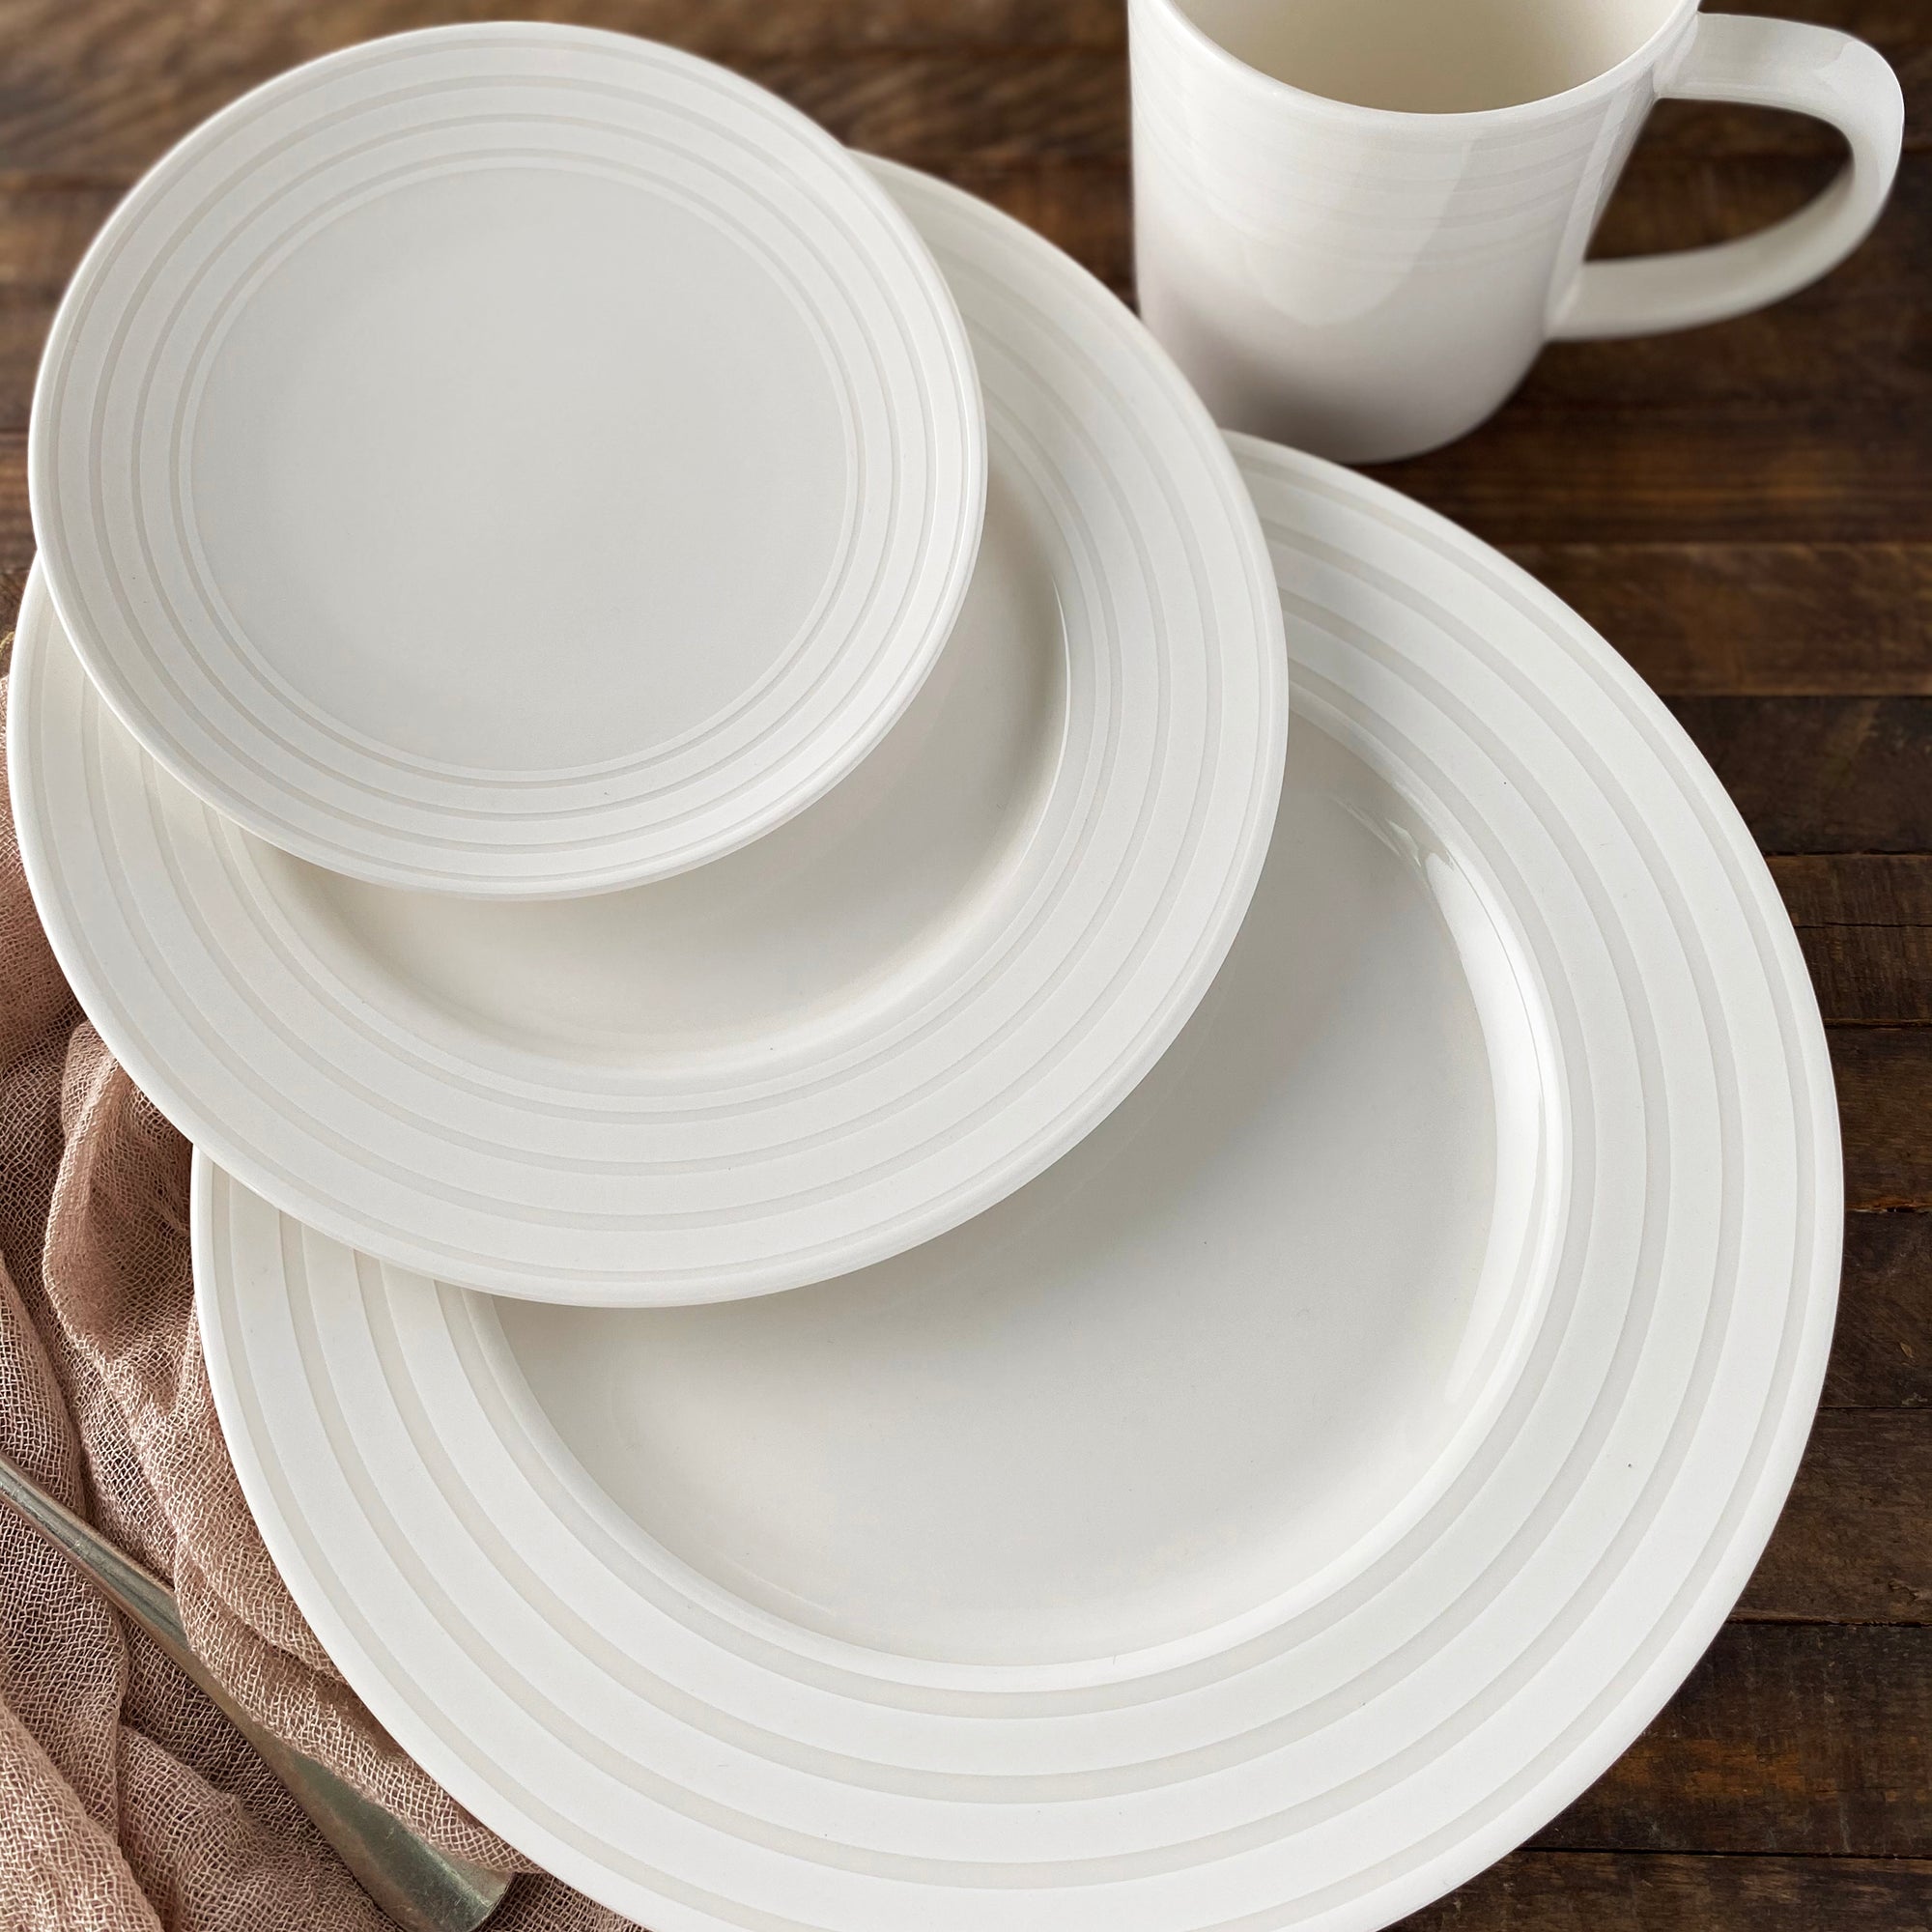 Cambridge Stripe Dinner Plate in raised white on white, high-fired porcelain dinnerware- Caskata